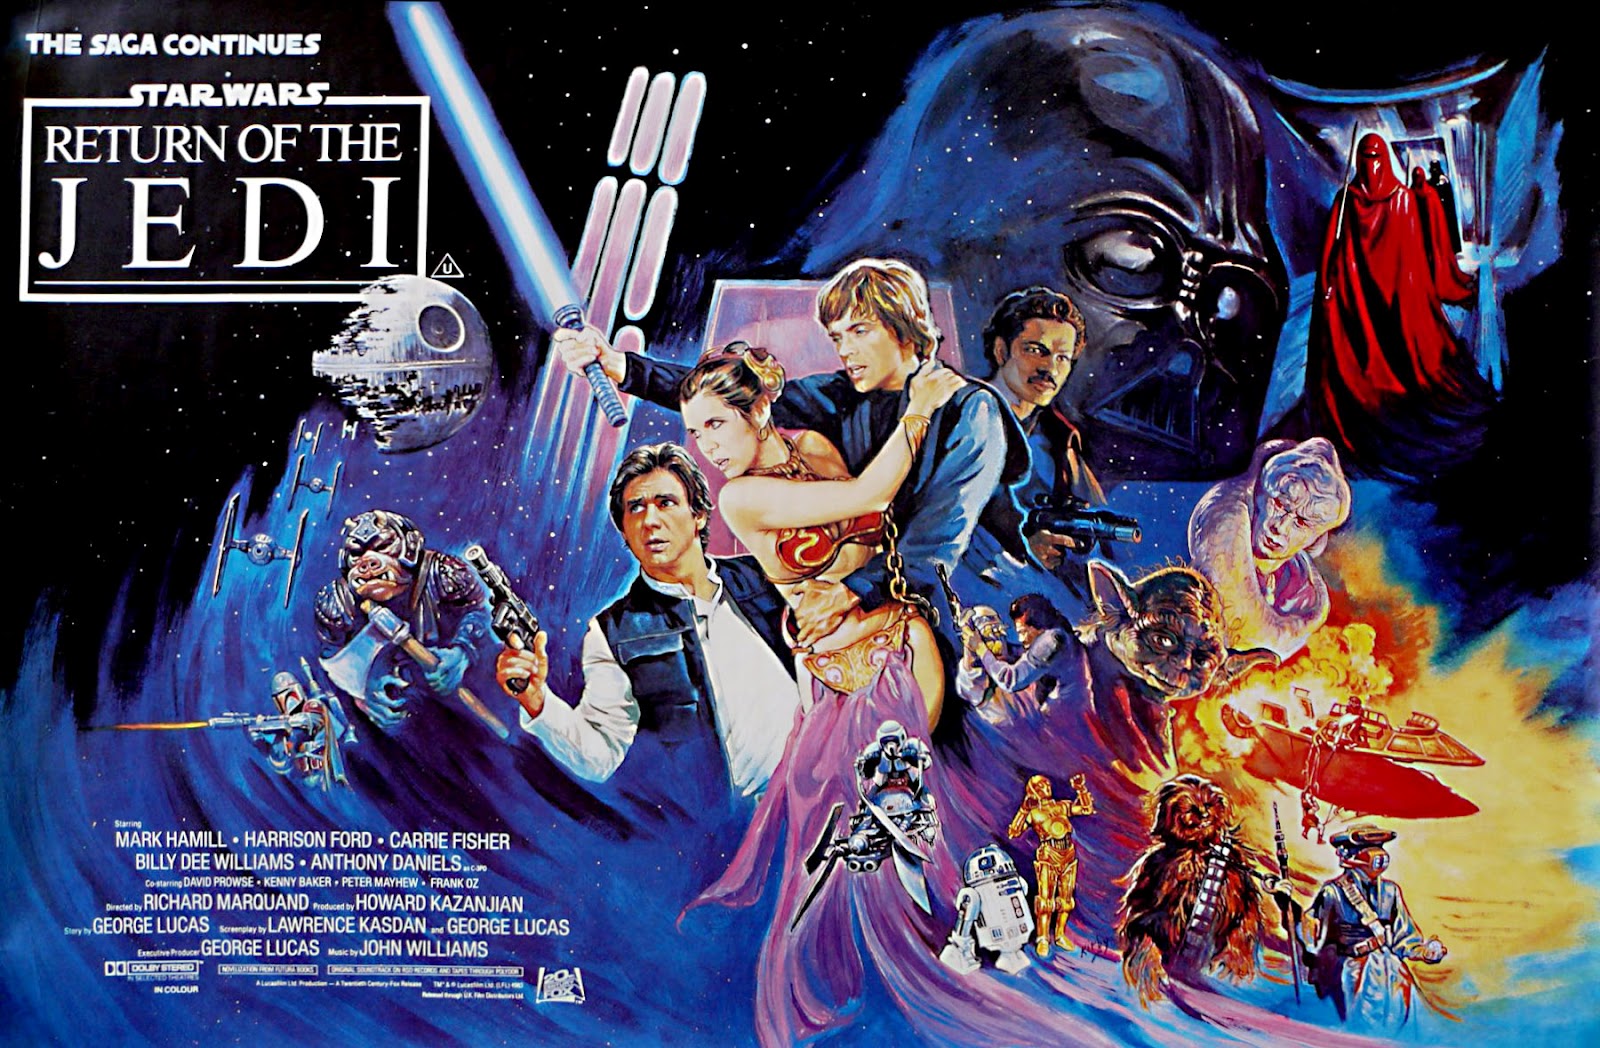 STAR WARS: The Rise of Skywalker - Revitalized (Full Fan Movie) 